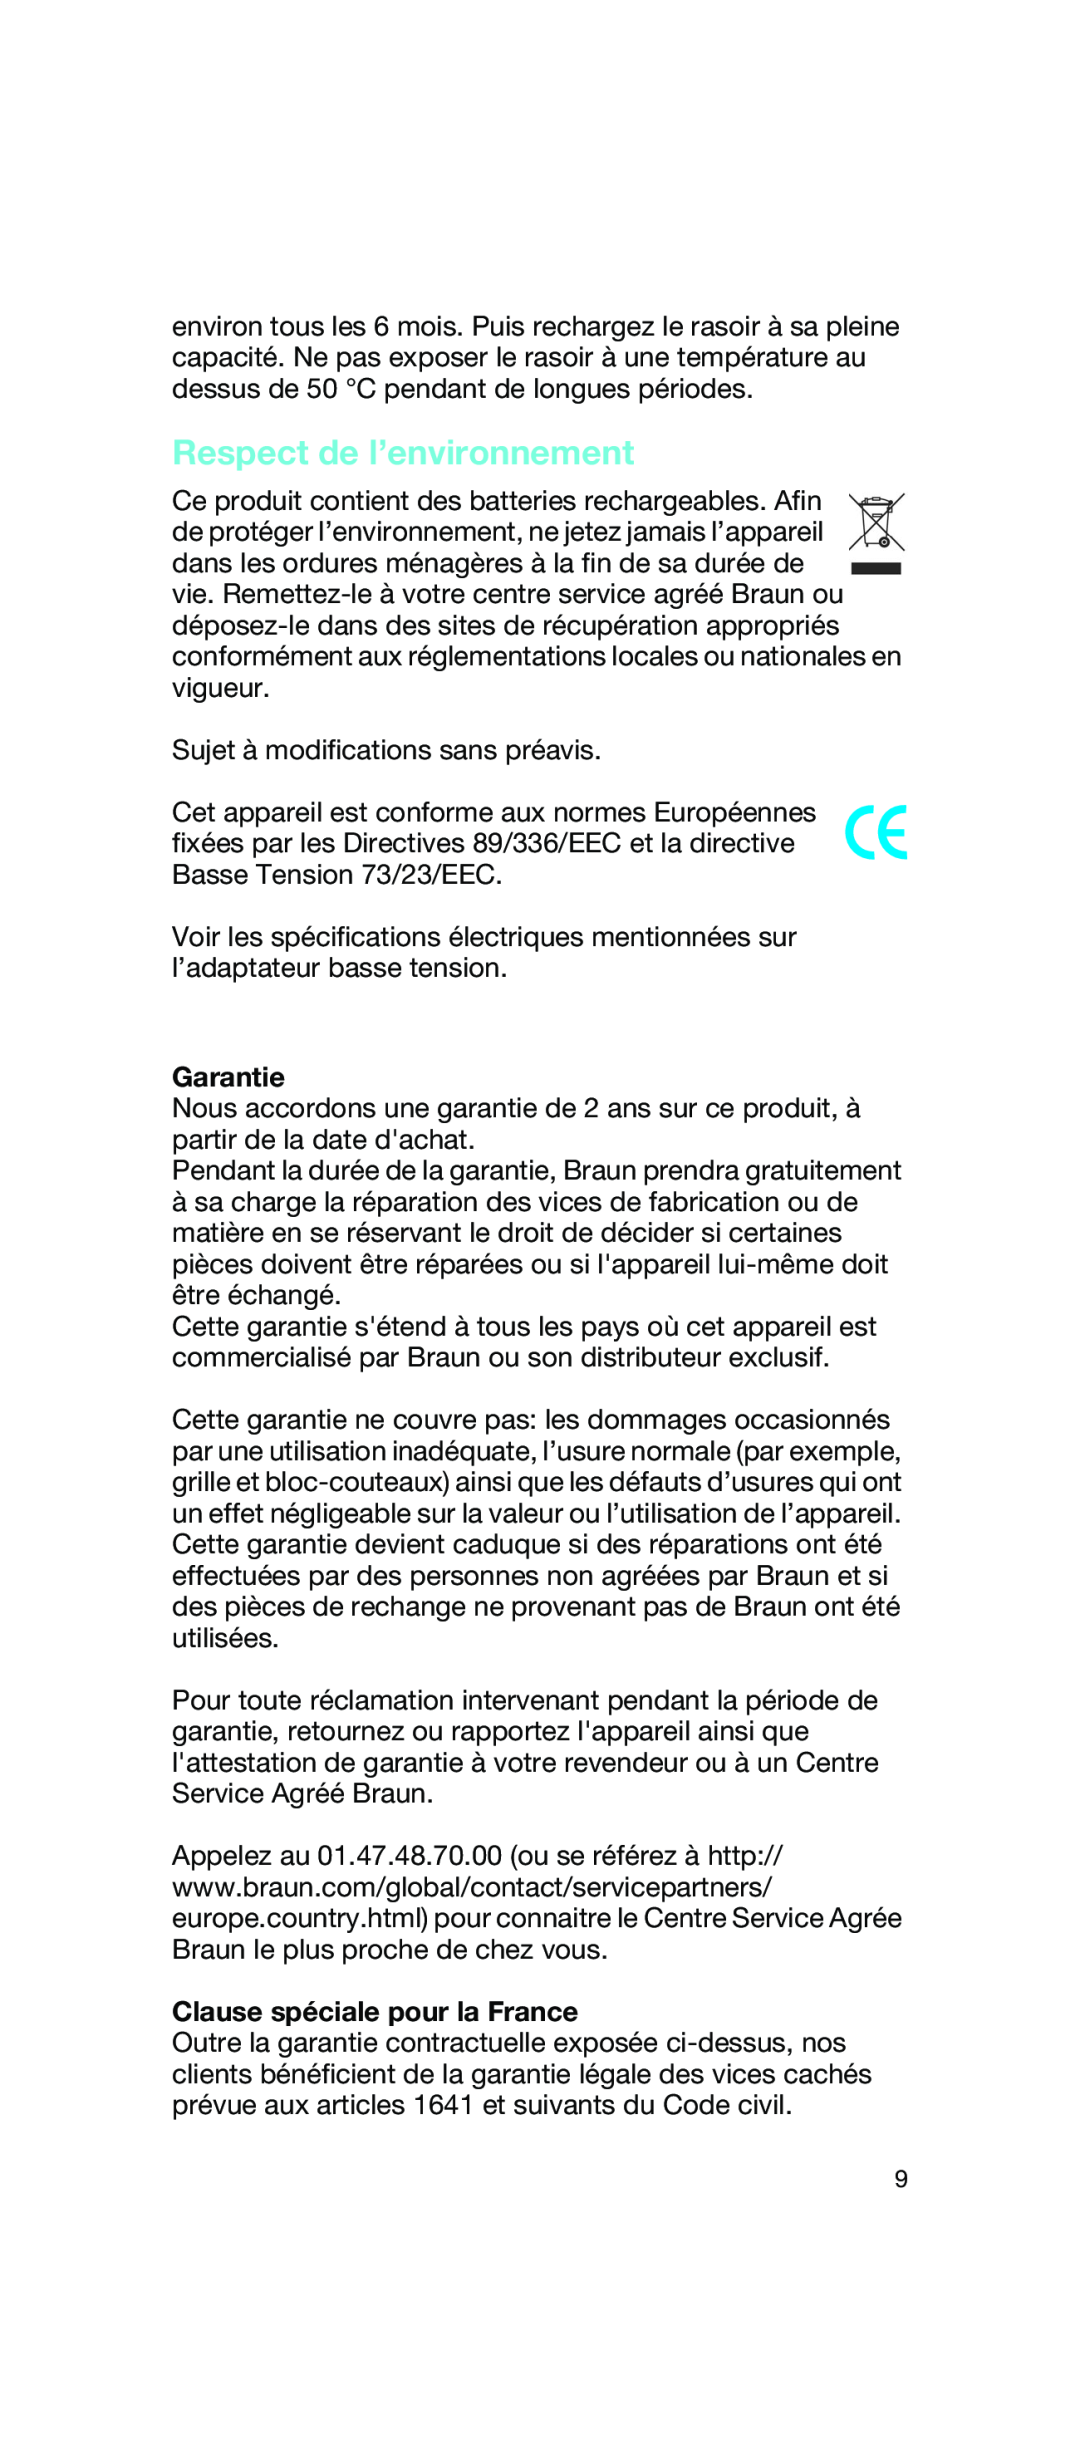 Braun 2675 manual Respect de l’environnement, Garantie, Clause spéciale pour la France 